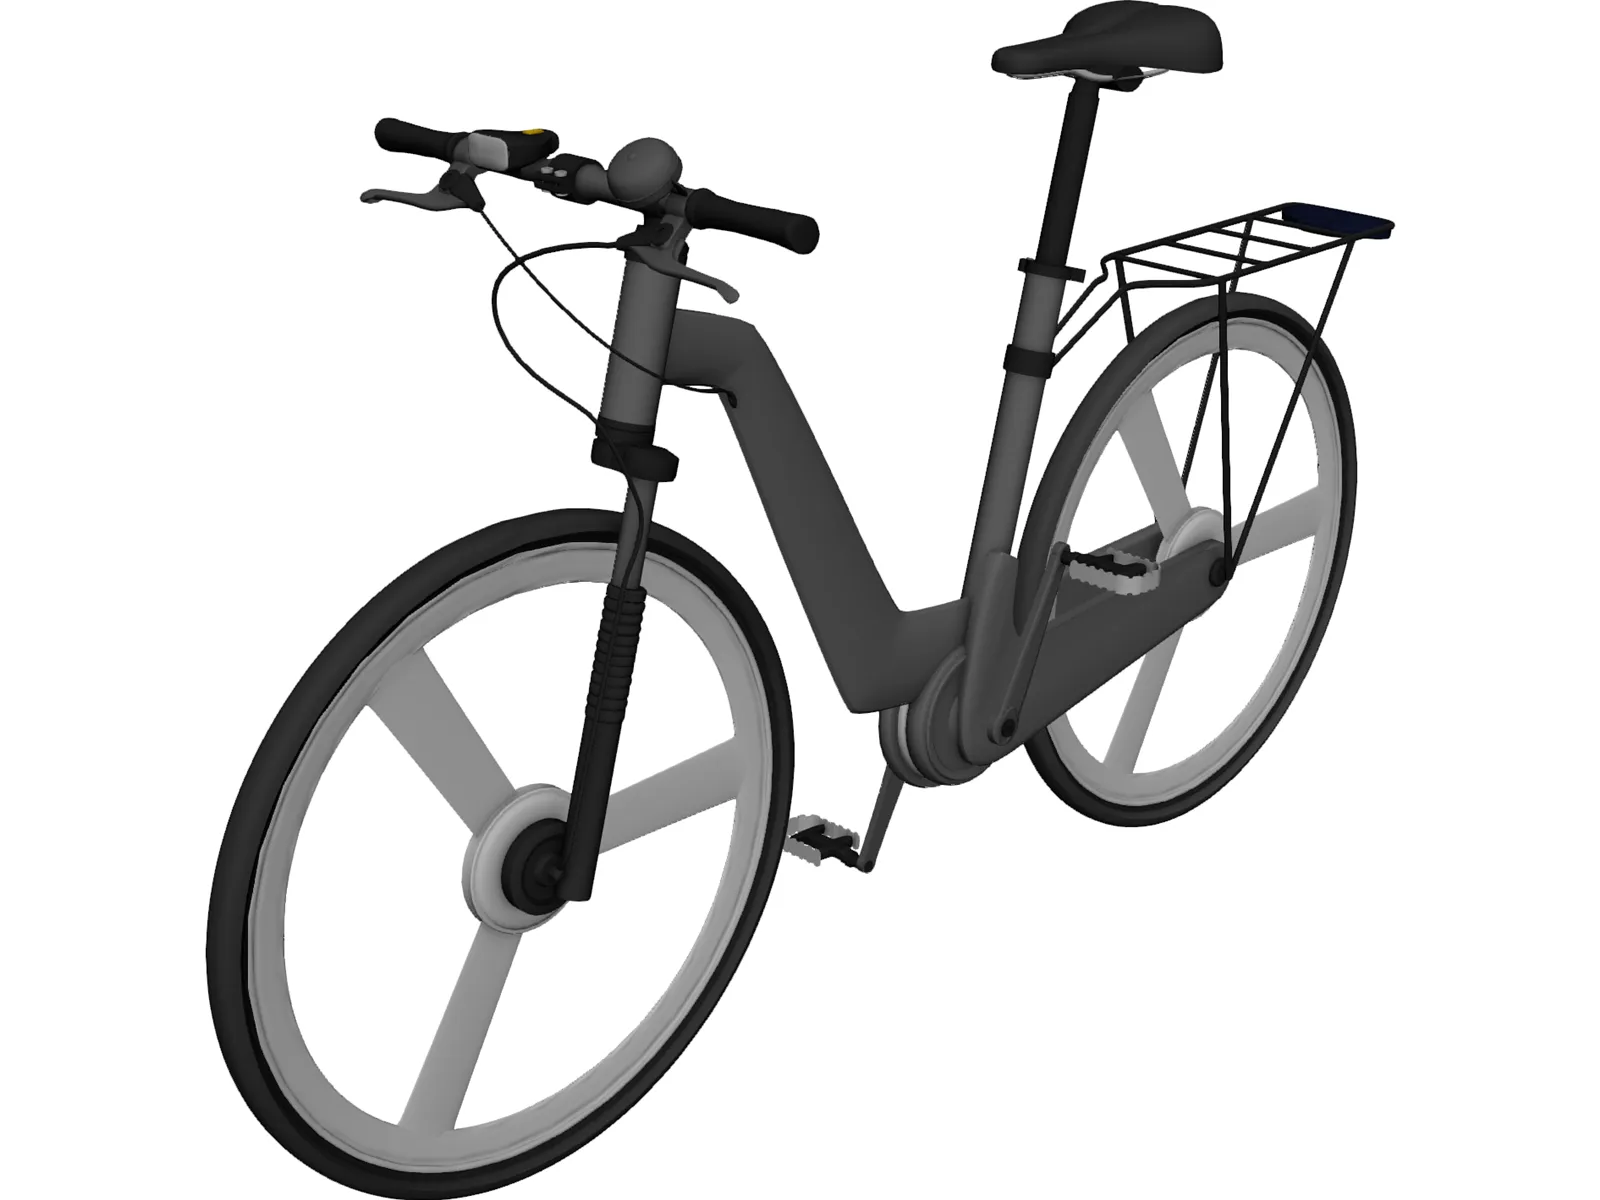 Bike Modern 3D Model